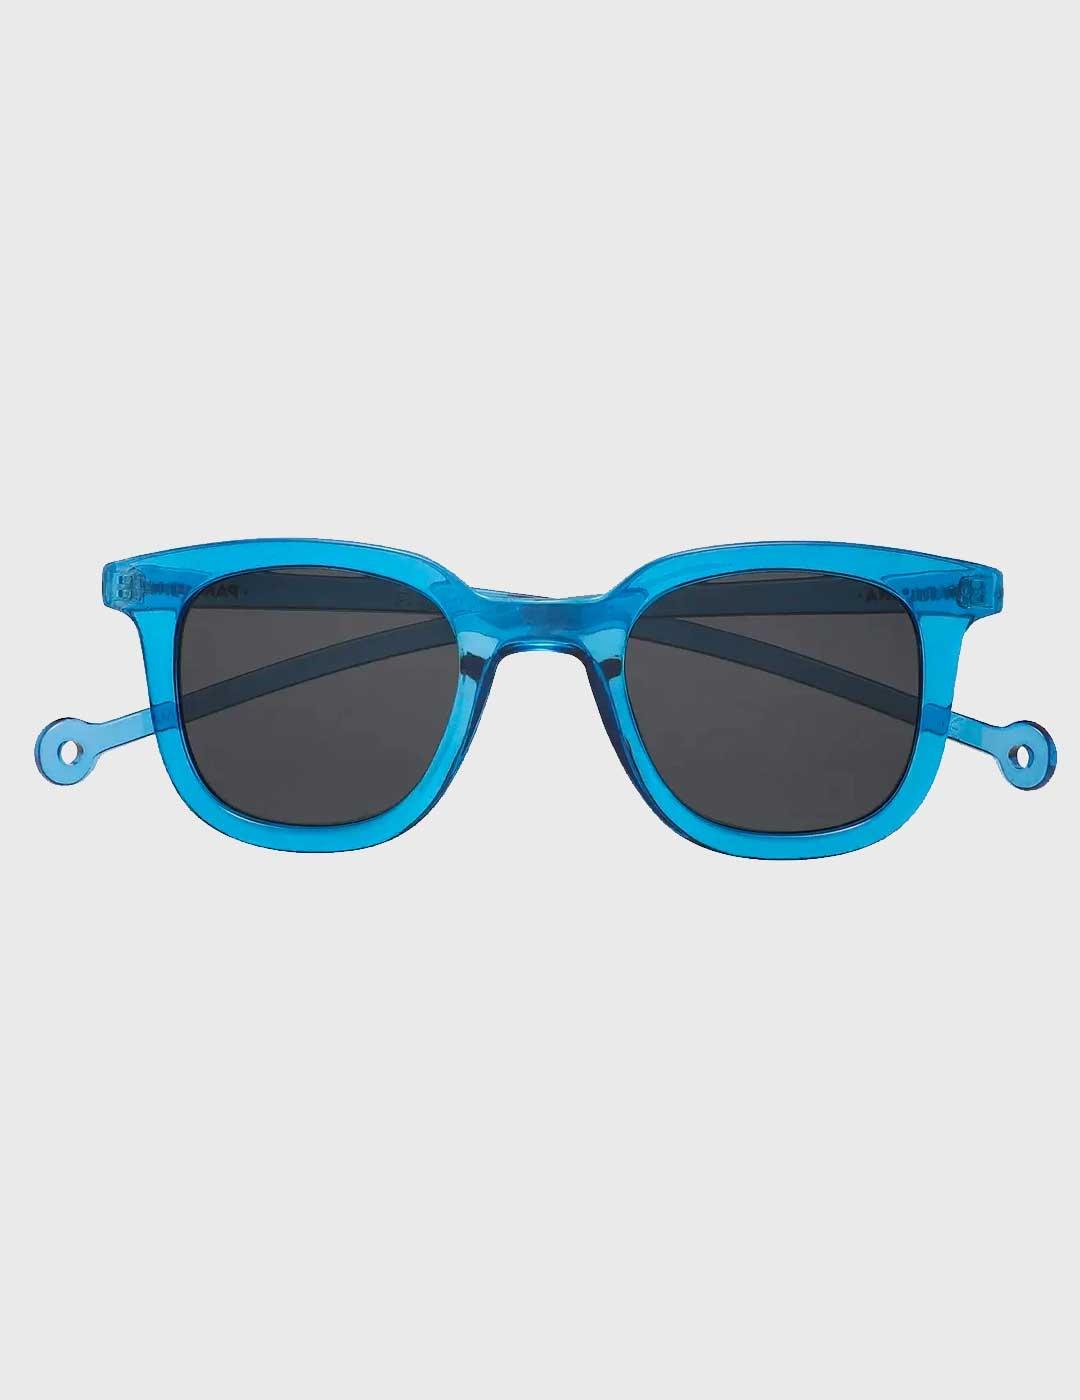 Gafas de Sol Parafina Cauce azules para hombre y mujer